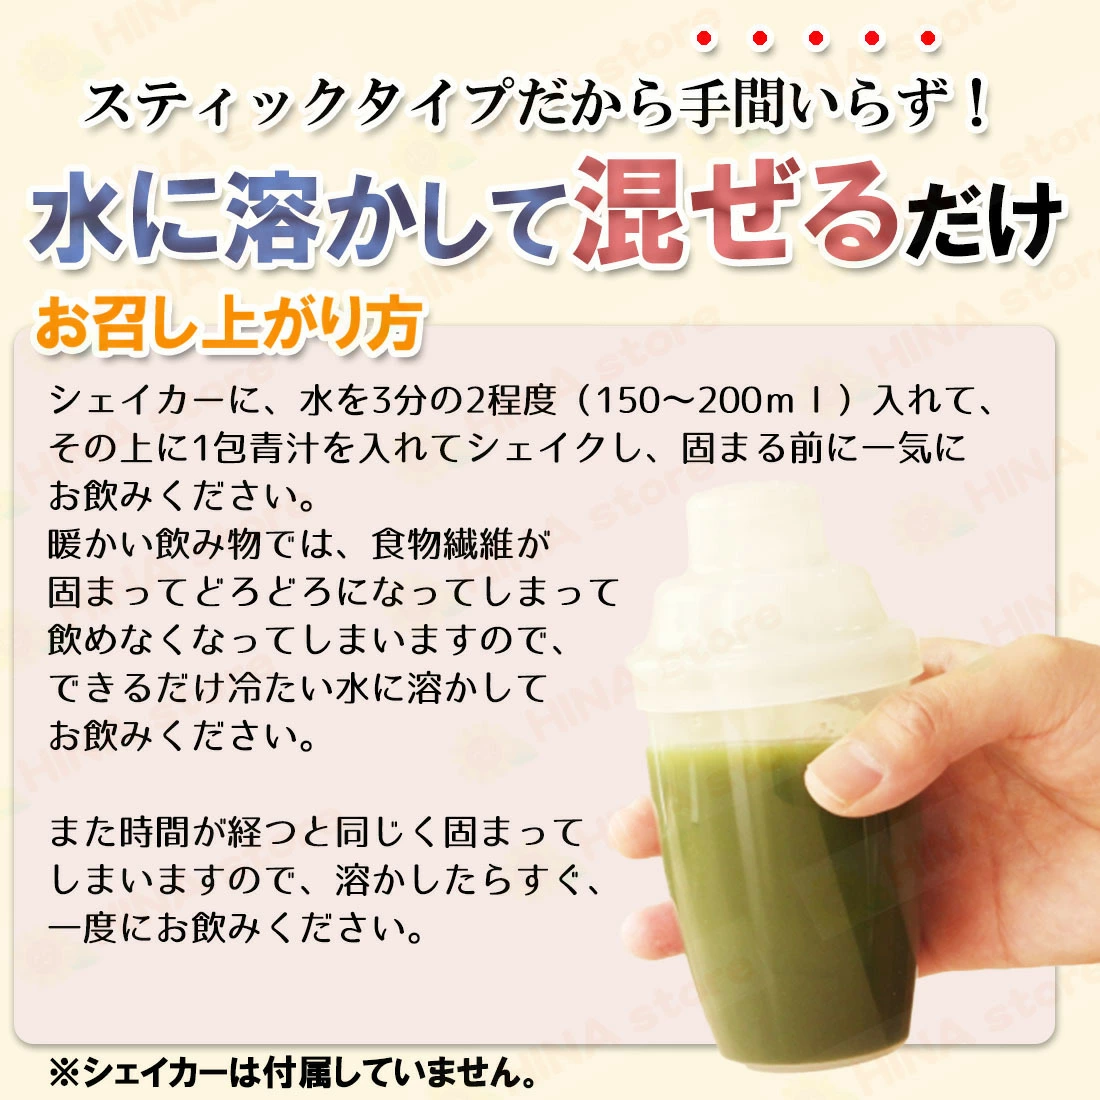 銀座まるかんゴットハートダイエットJOKA青汁1箱 - ダイエット食品